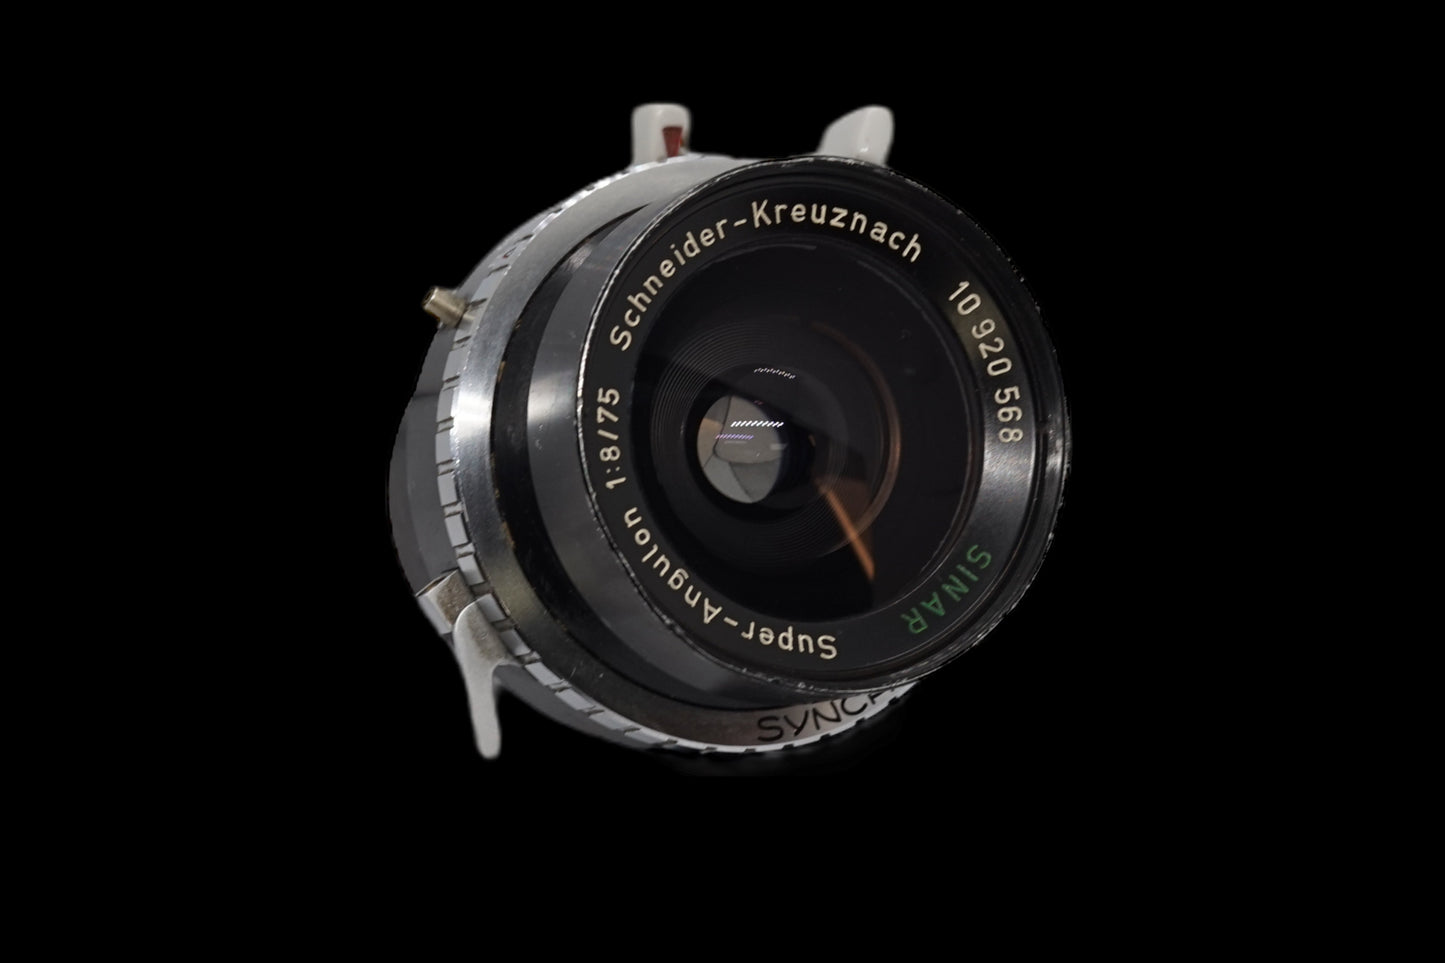 Schneider 75mm F8 Lens with Camera Setup